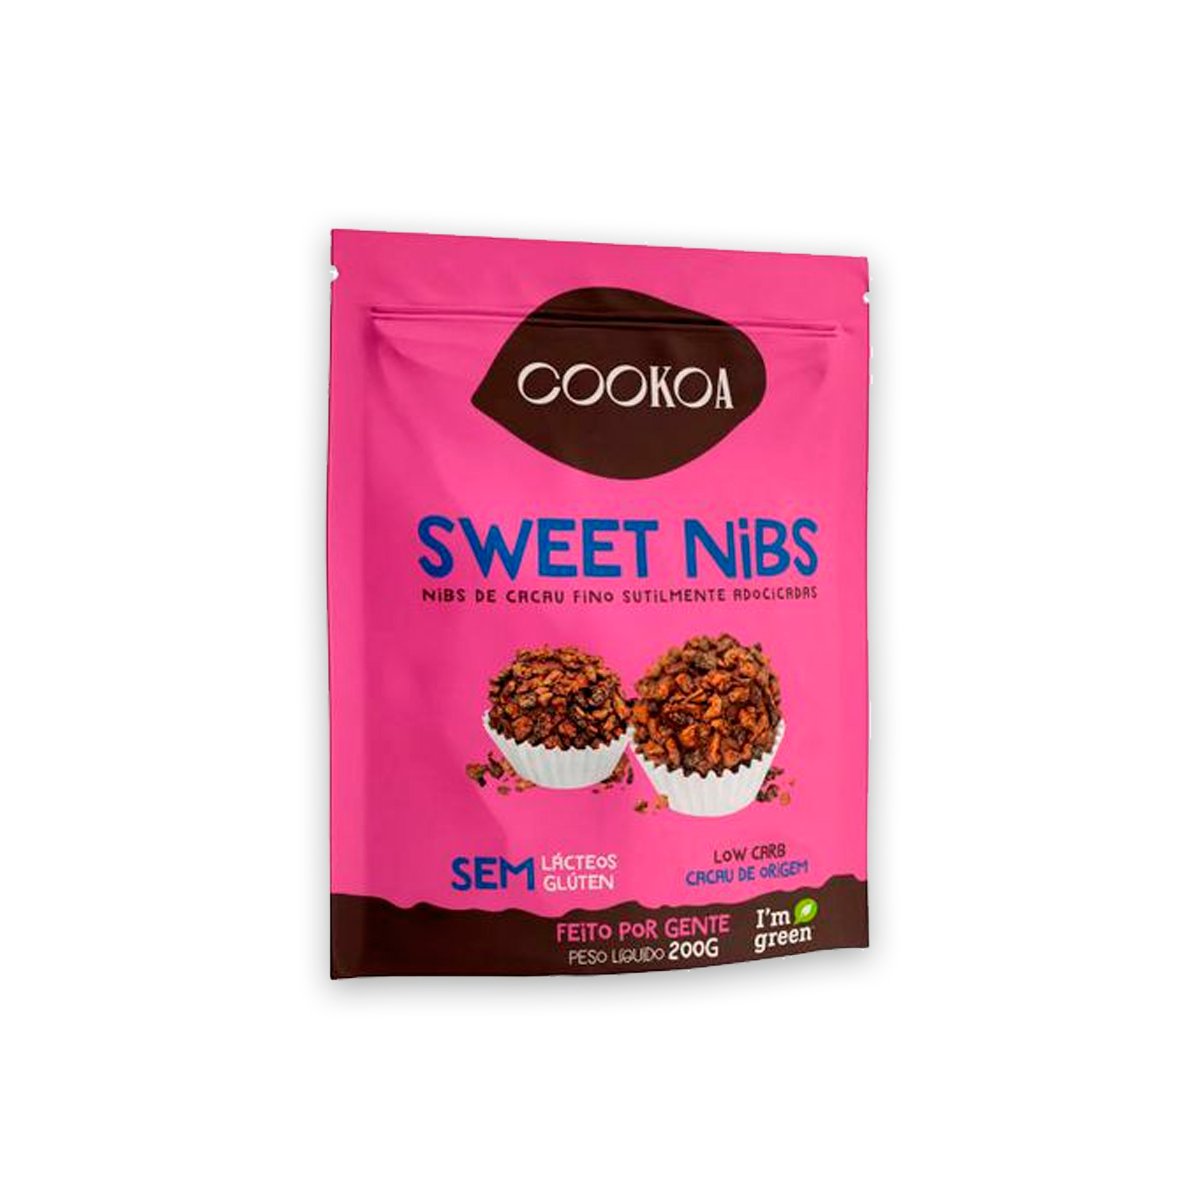 Sweet Nibs de Cacau Fino Levemente Adoçado 200g Cookoa - 1